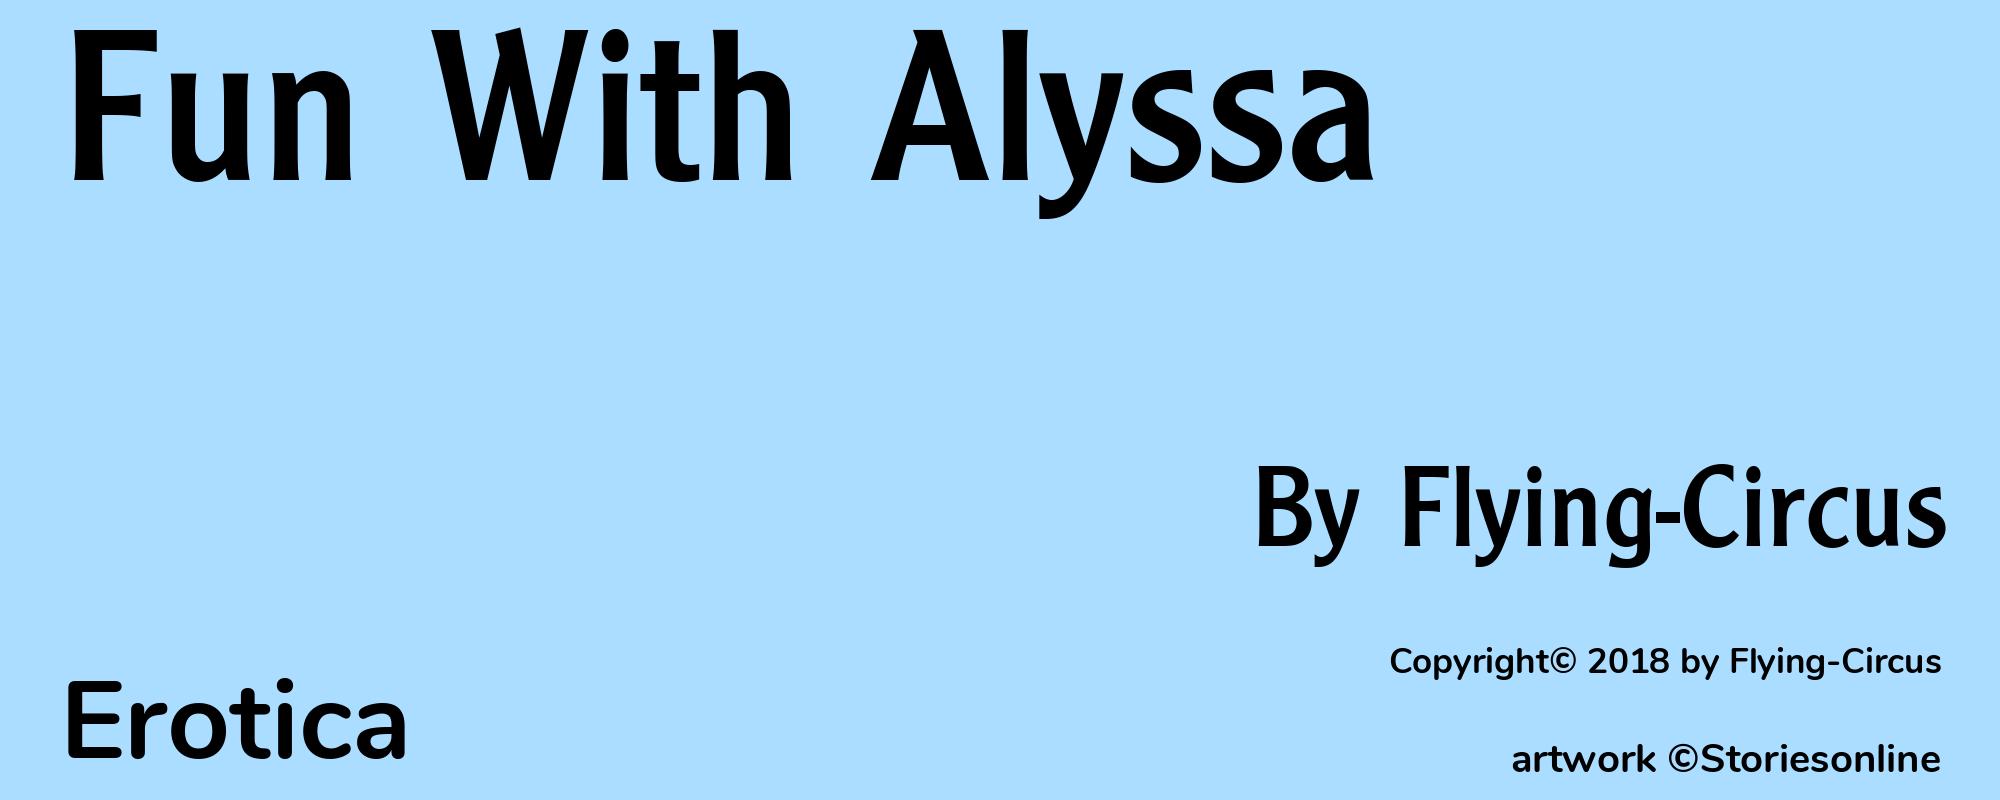 Fun With Alyssa - Cover